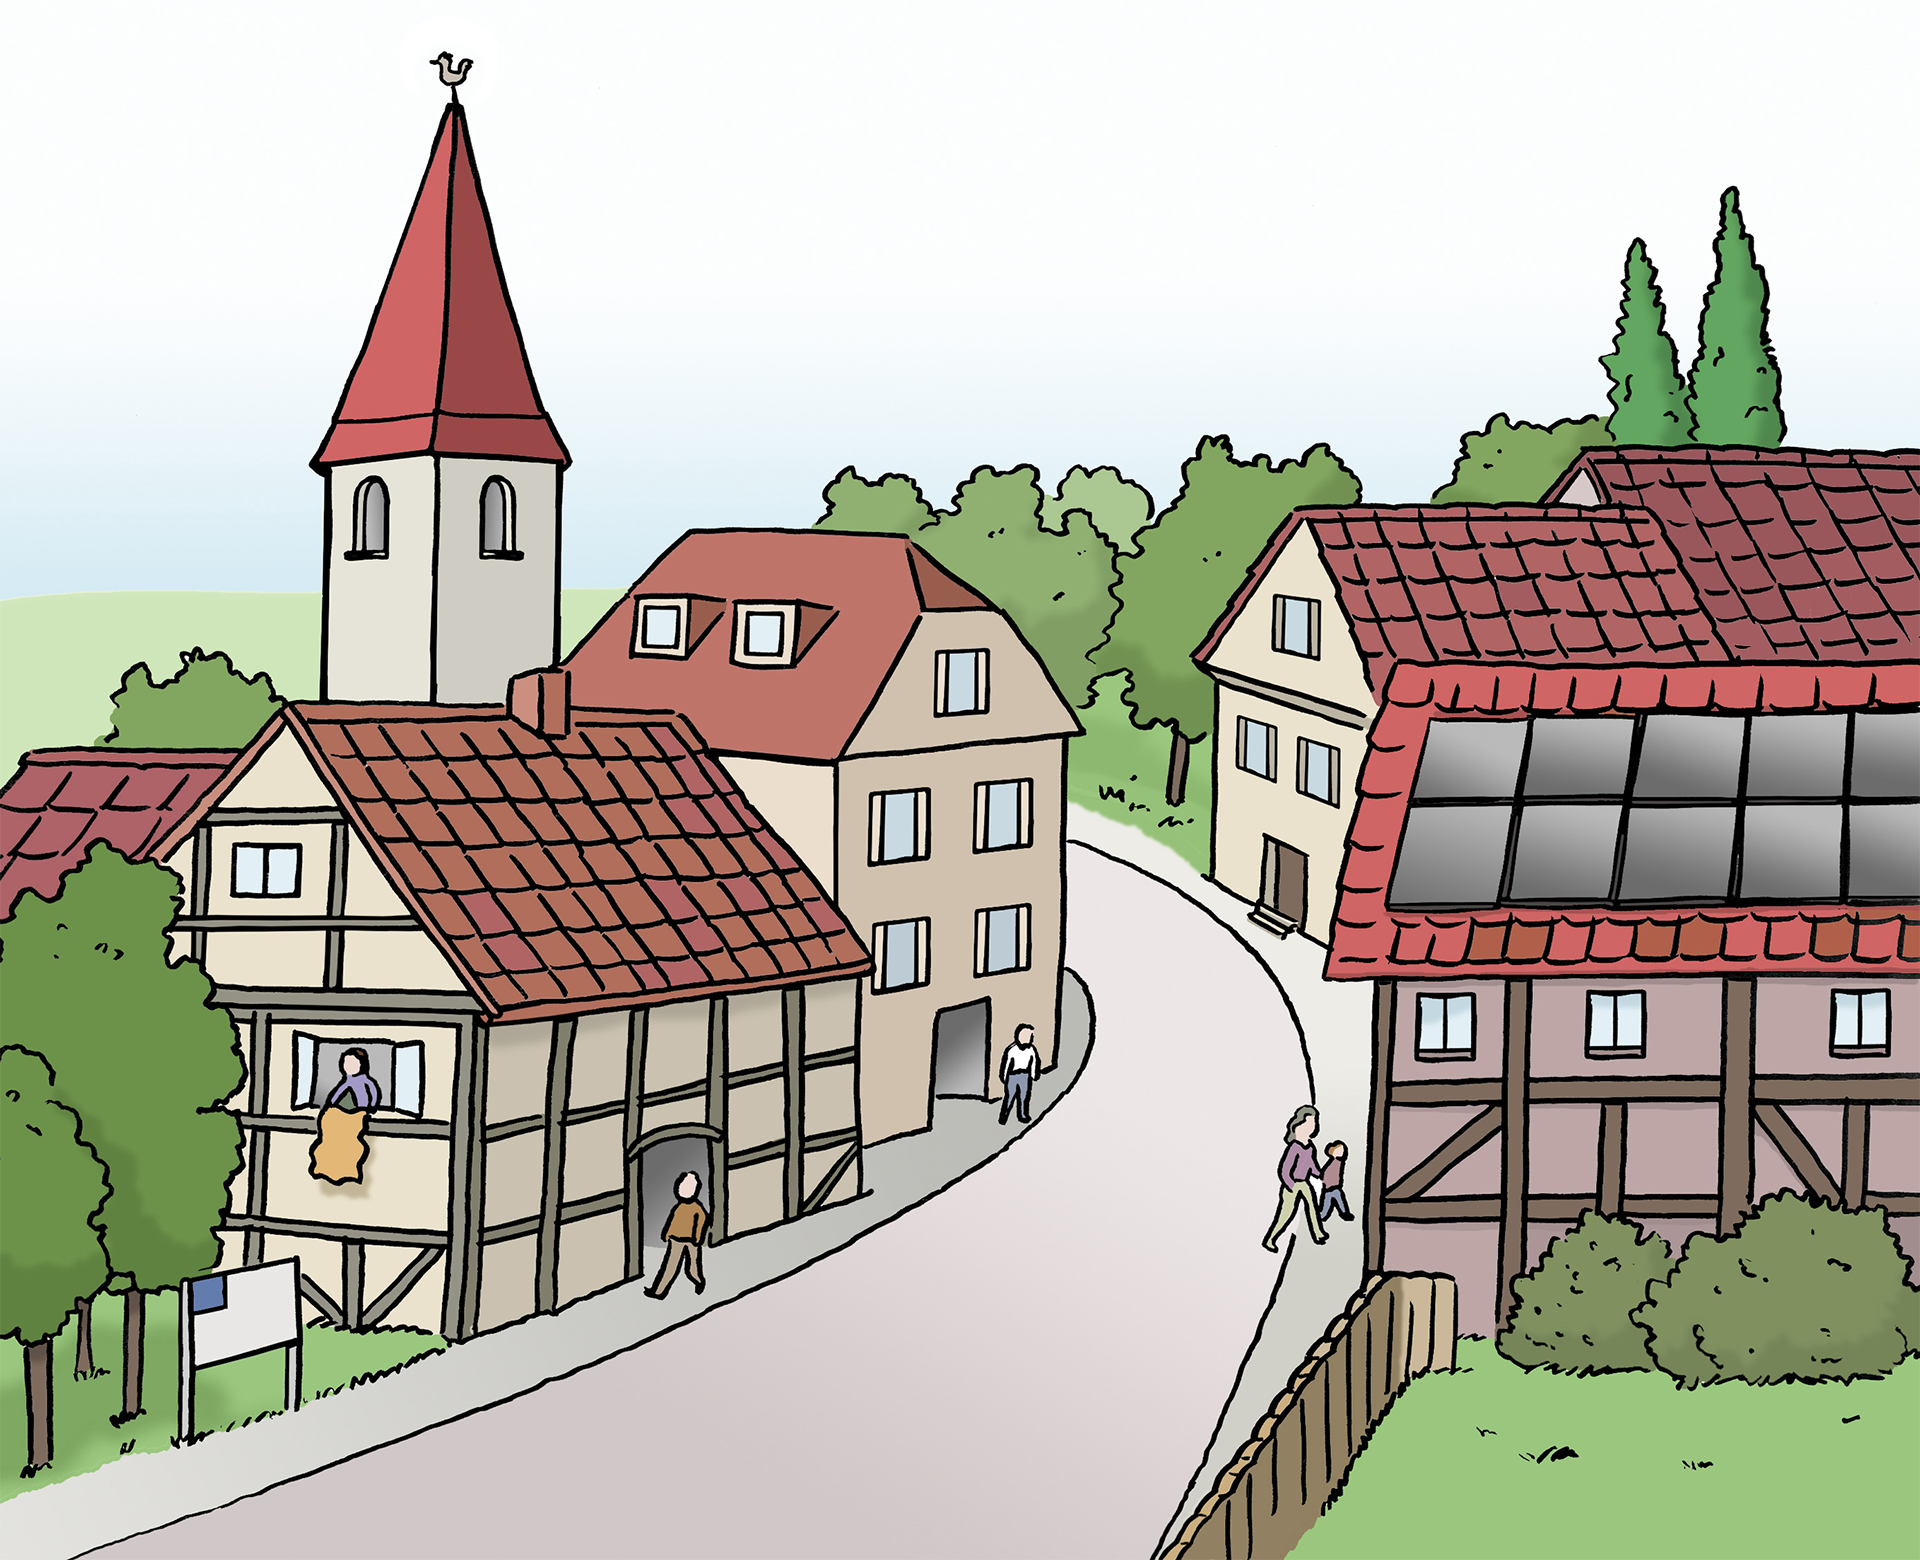 Bild zeigt ein Dorf mit Fachwerkhäusern und einem Kirchturm